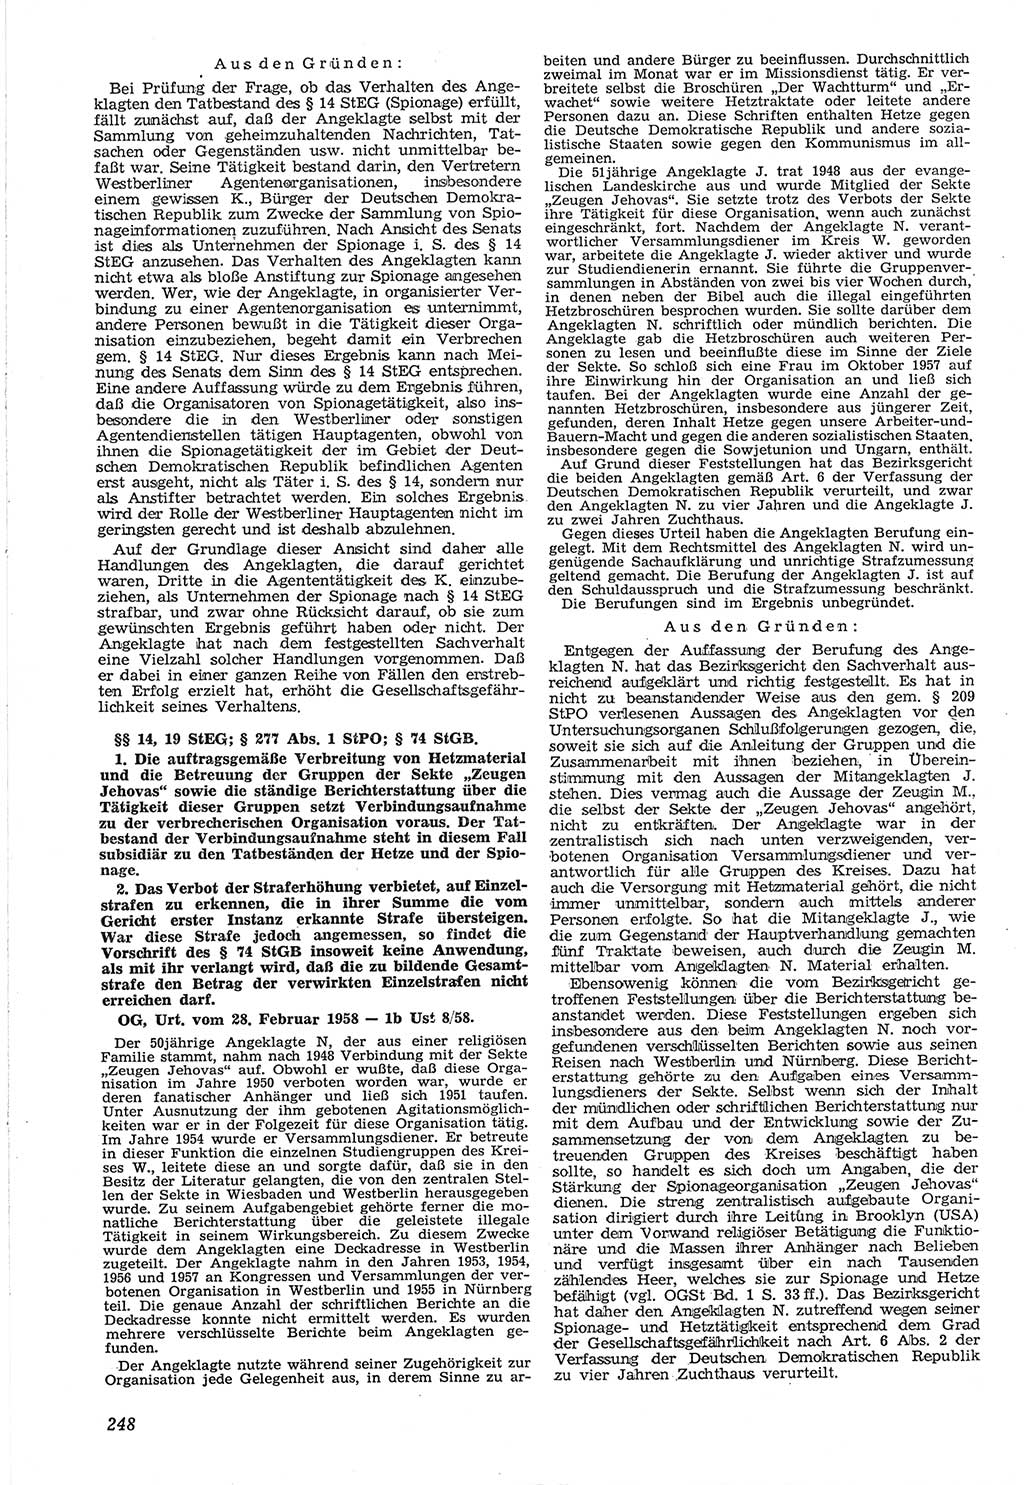 Neue Justiz (NJ), Zeitschrift für Recht und Rechtswissenschaft [Deutsche Demokratische Republik (DDR)], 12. Jahrgang 1958, Seite 248 (NJ DDR 1958, S. 248)